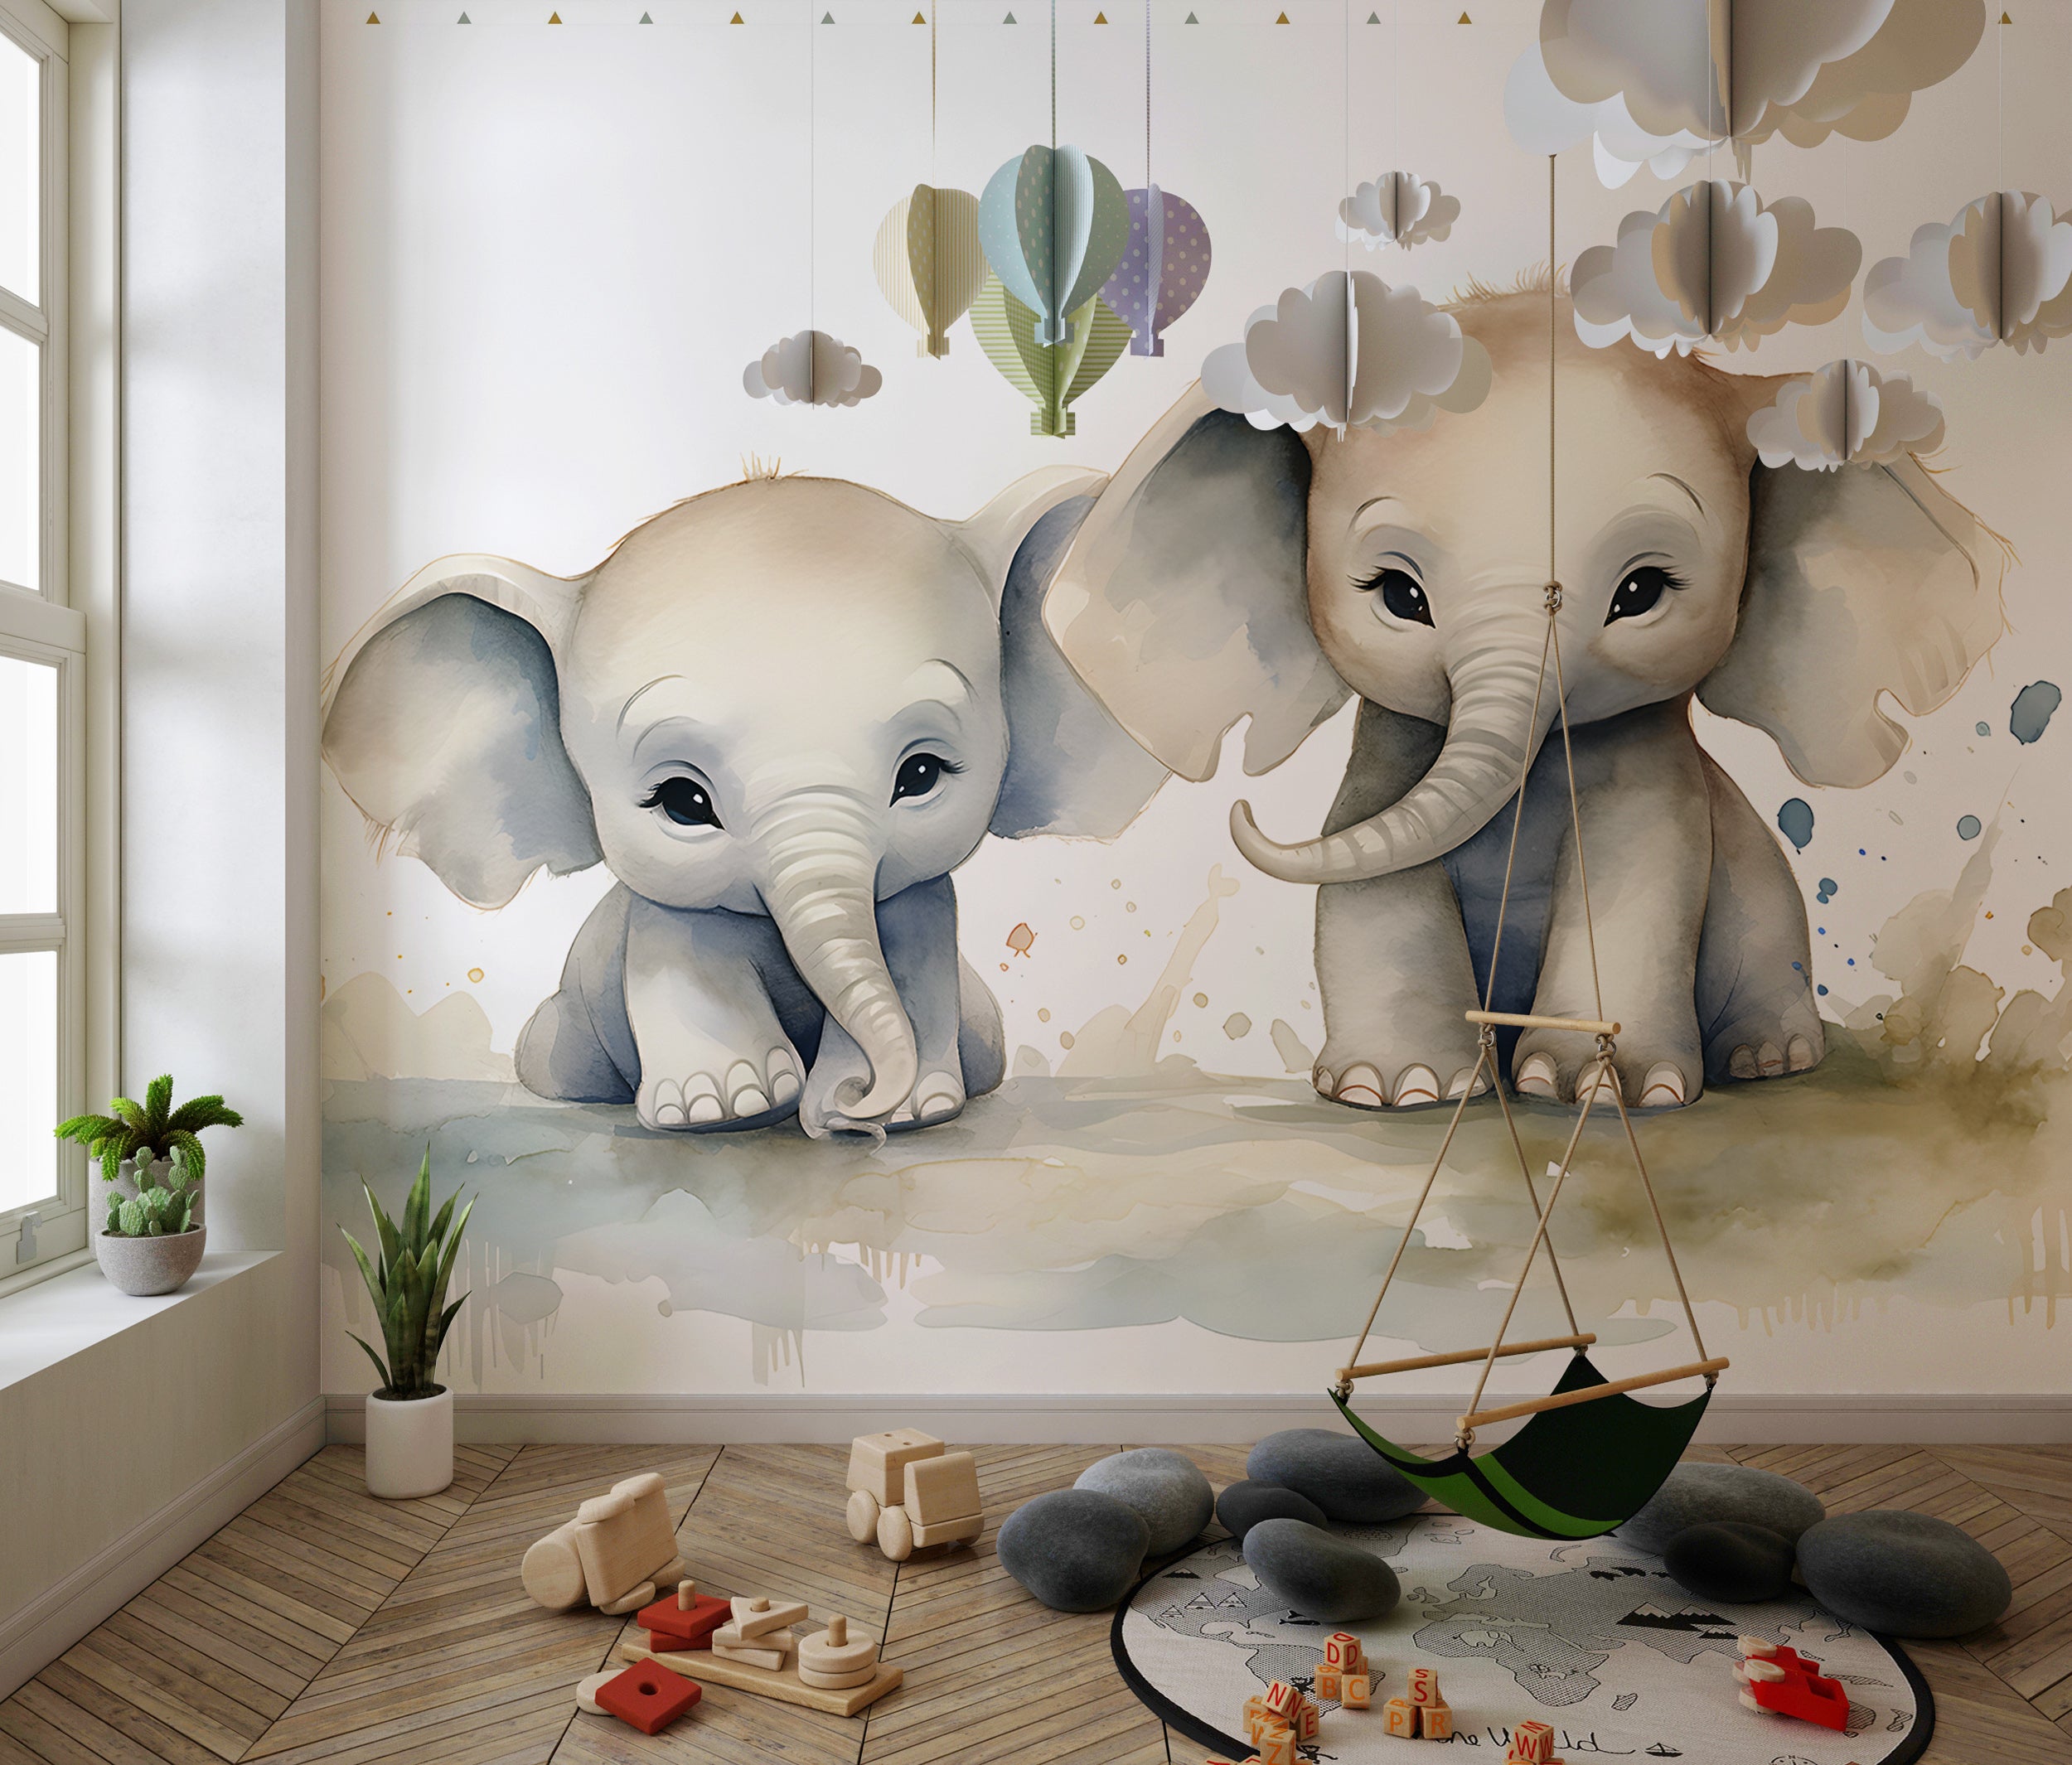 Elephant Wallpaper for Kids' Room